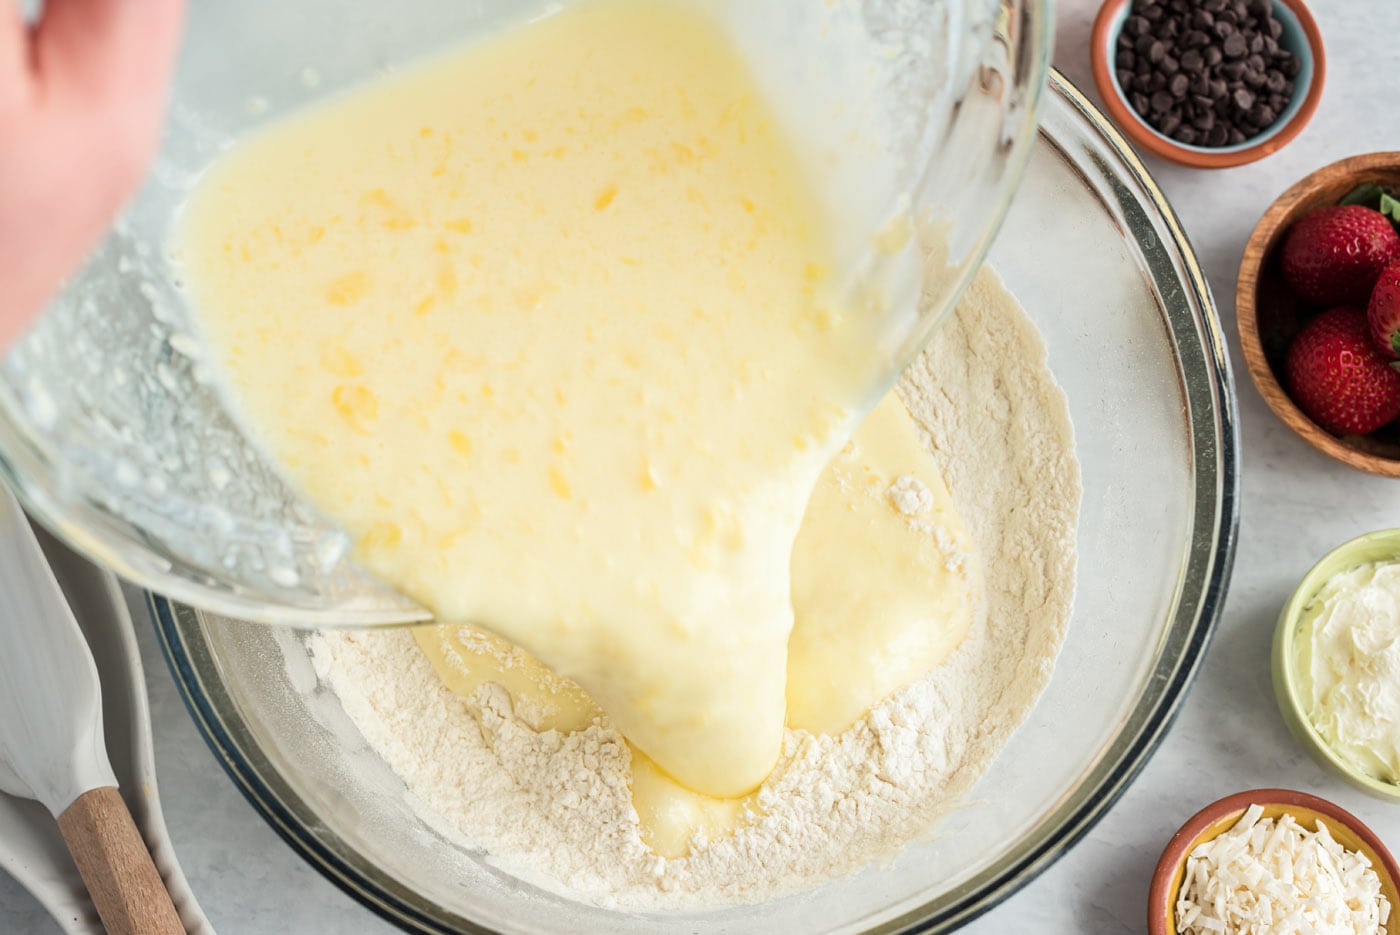 adding wet ingredients to dry pancake ingredients